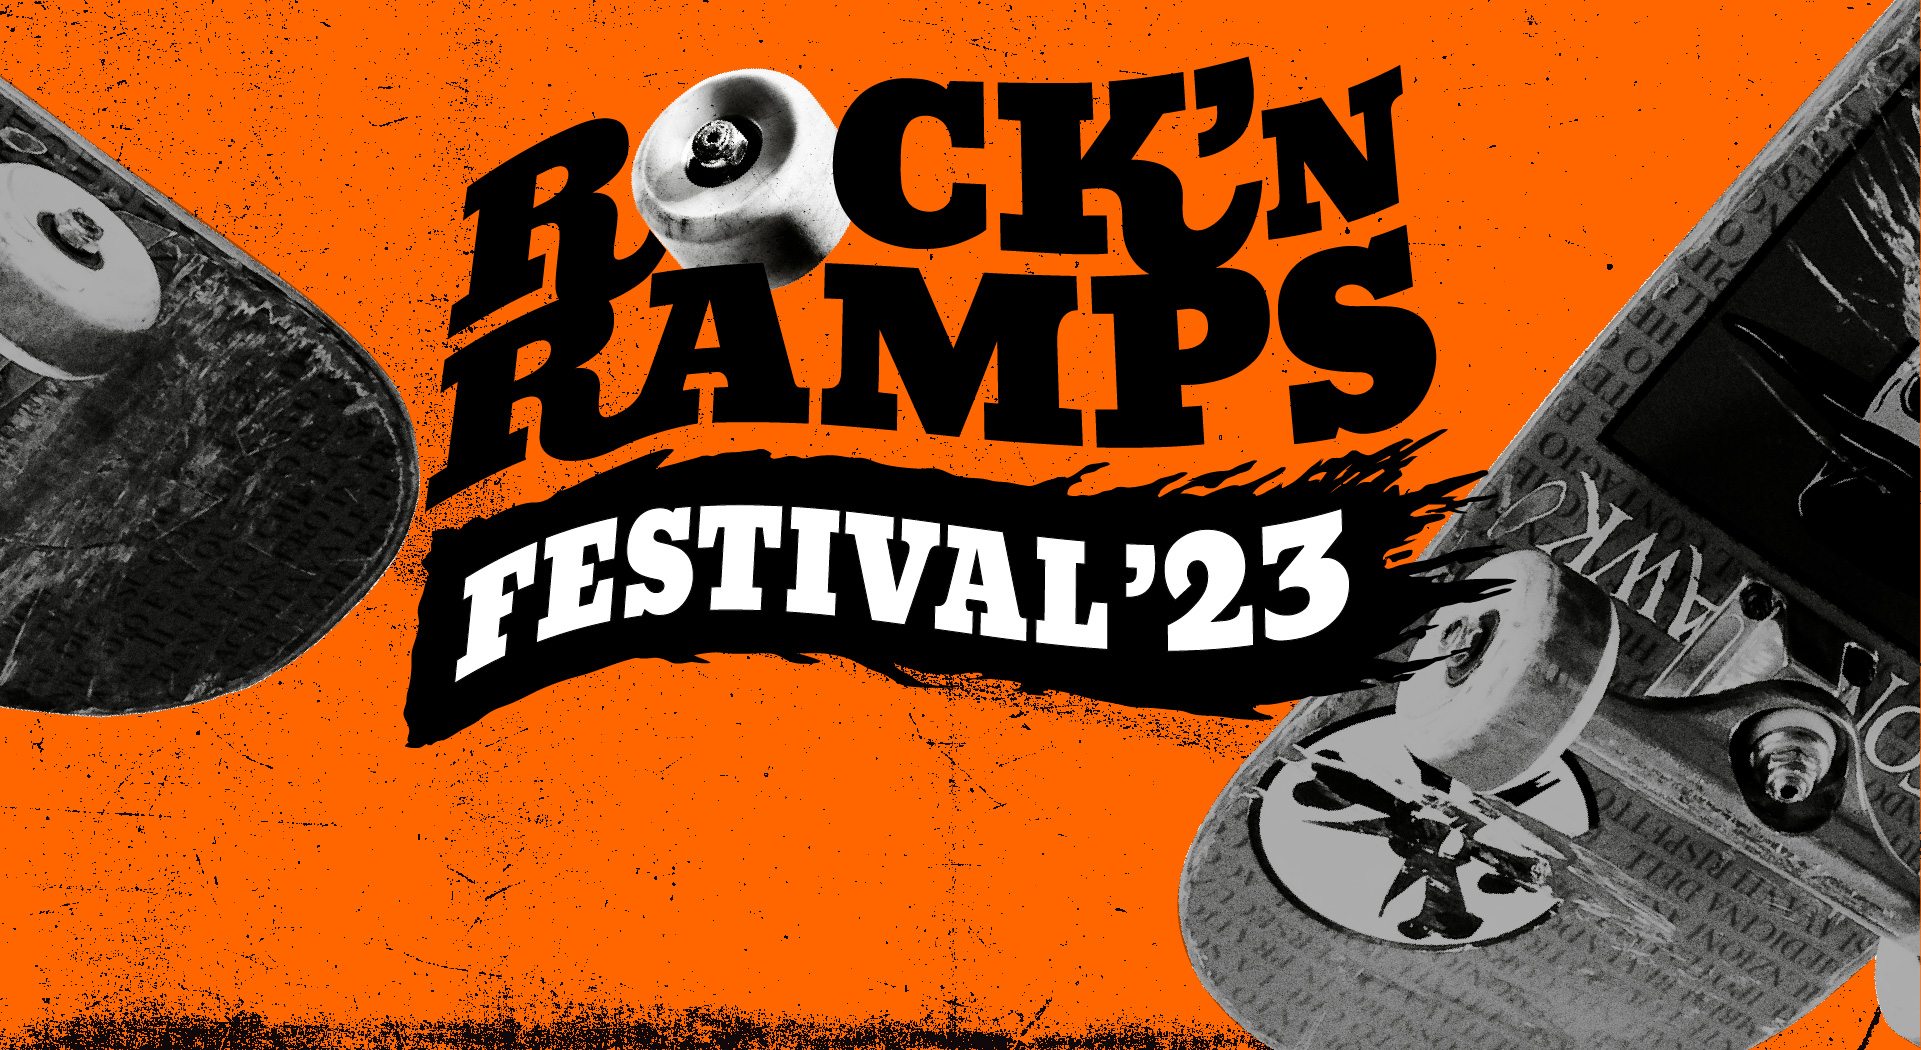 Rock 'n Ramps Next Top Band 10 juni in De Kroepoekfabriek